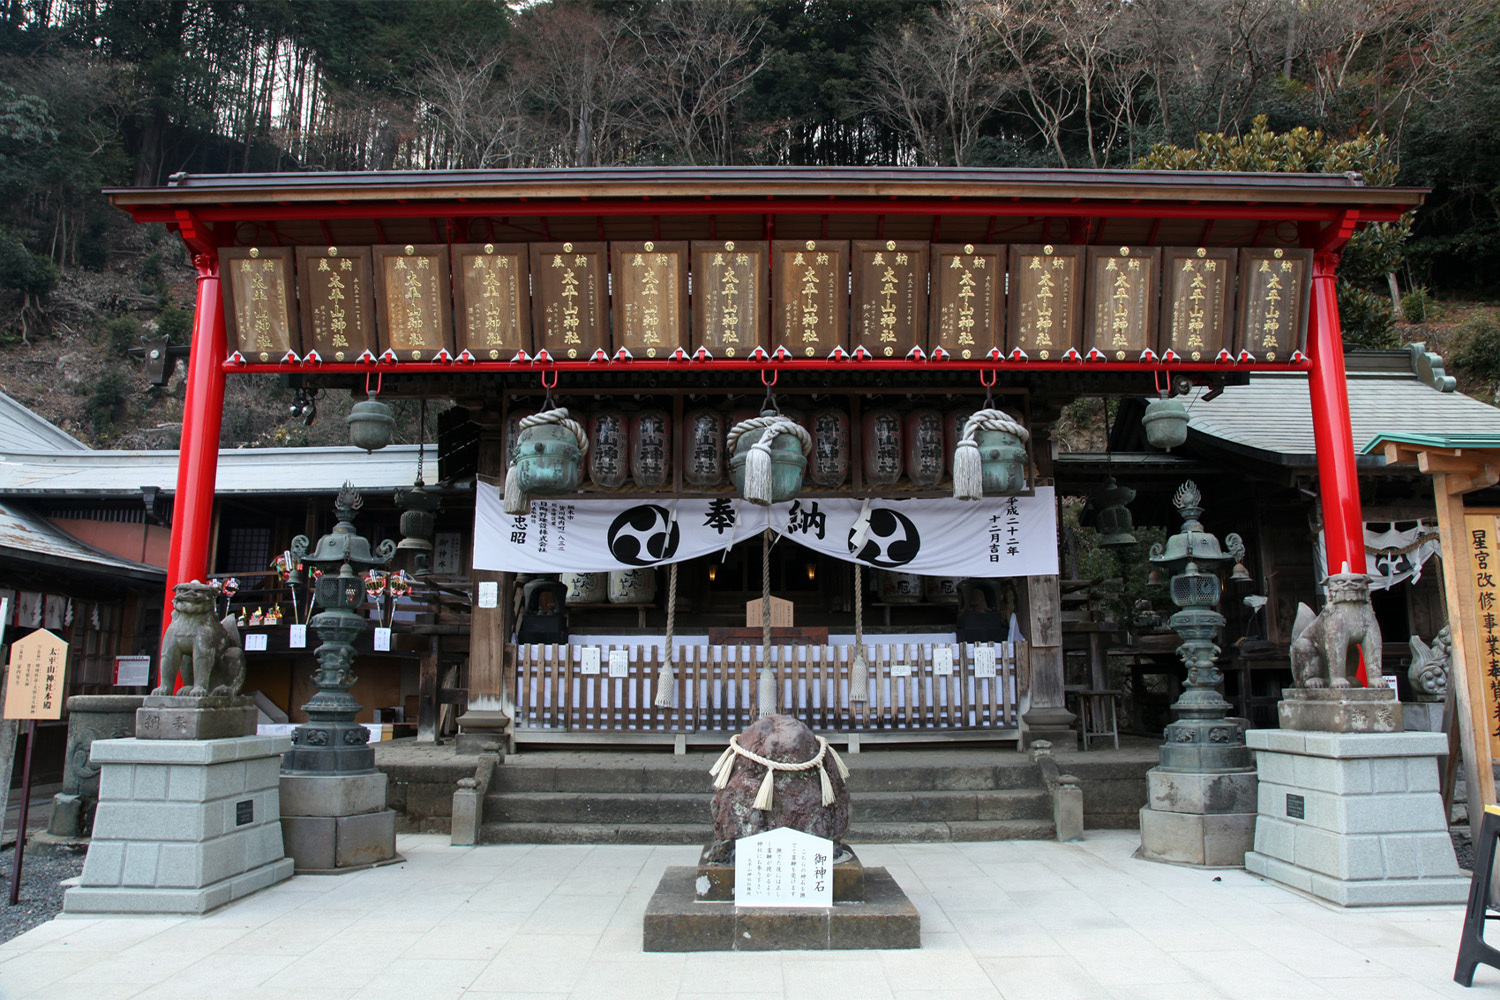 四季香る大平山神社と雨引観音バスツアー
のおすすめポイント詳細